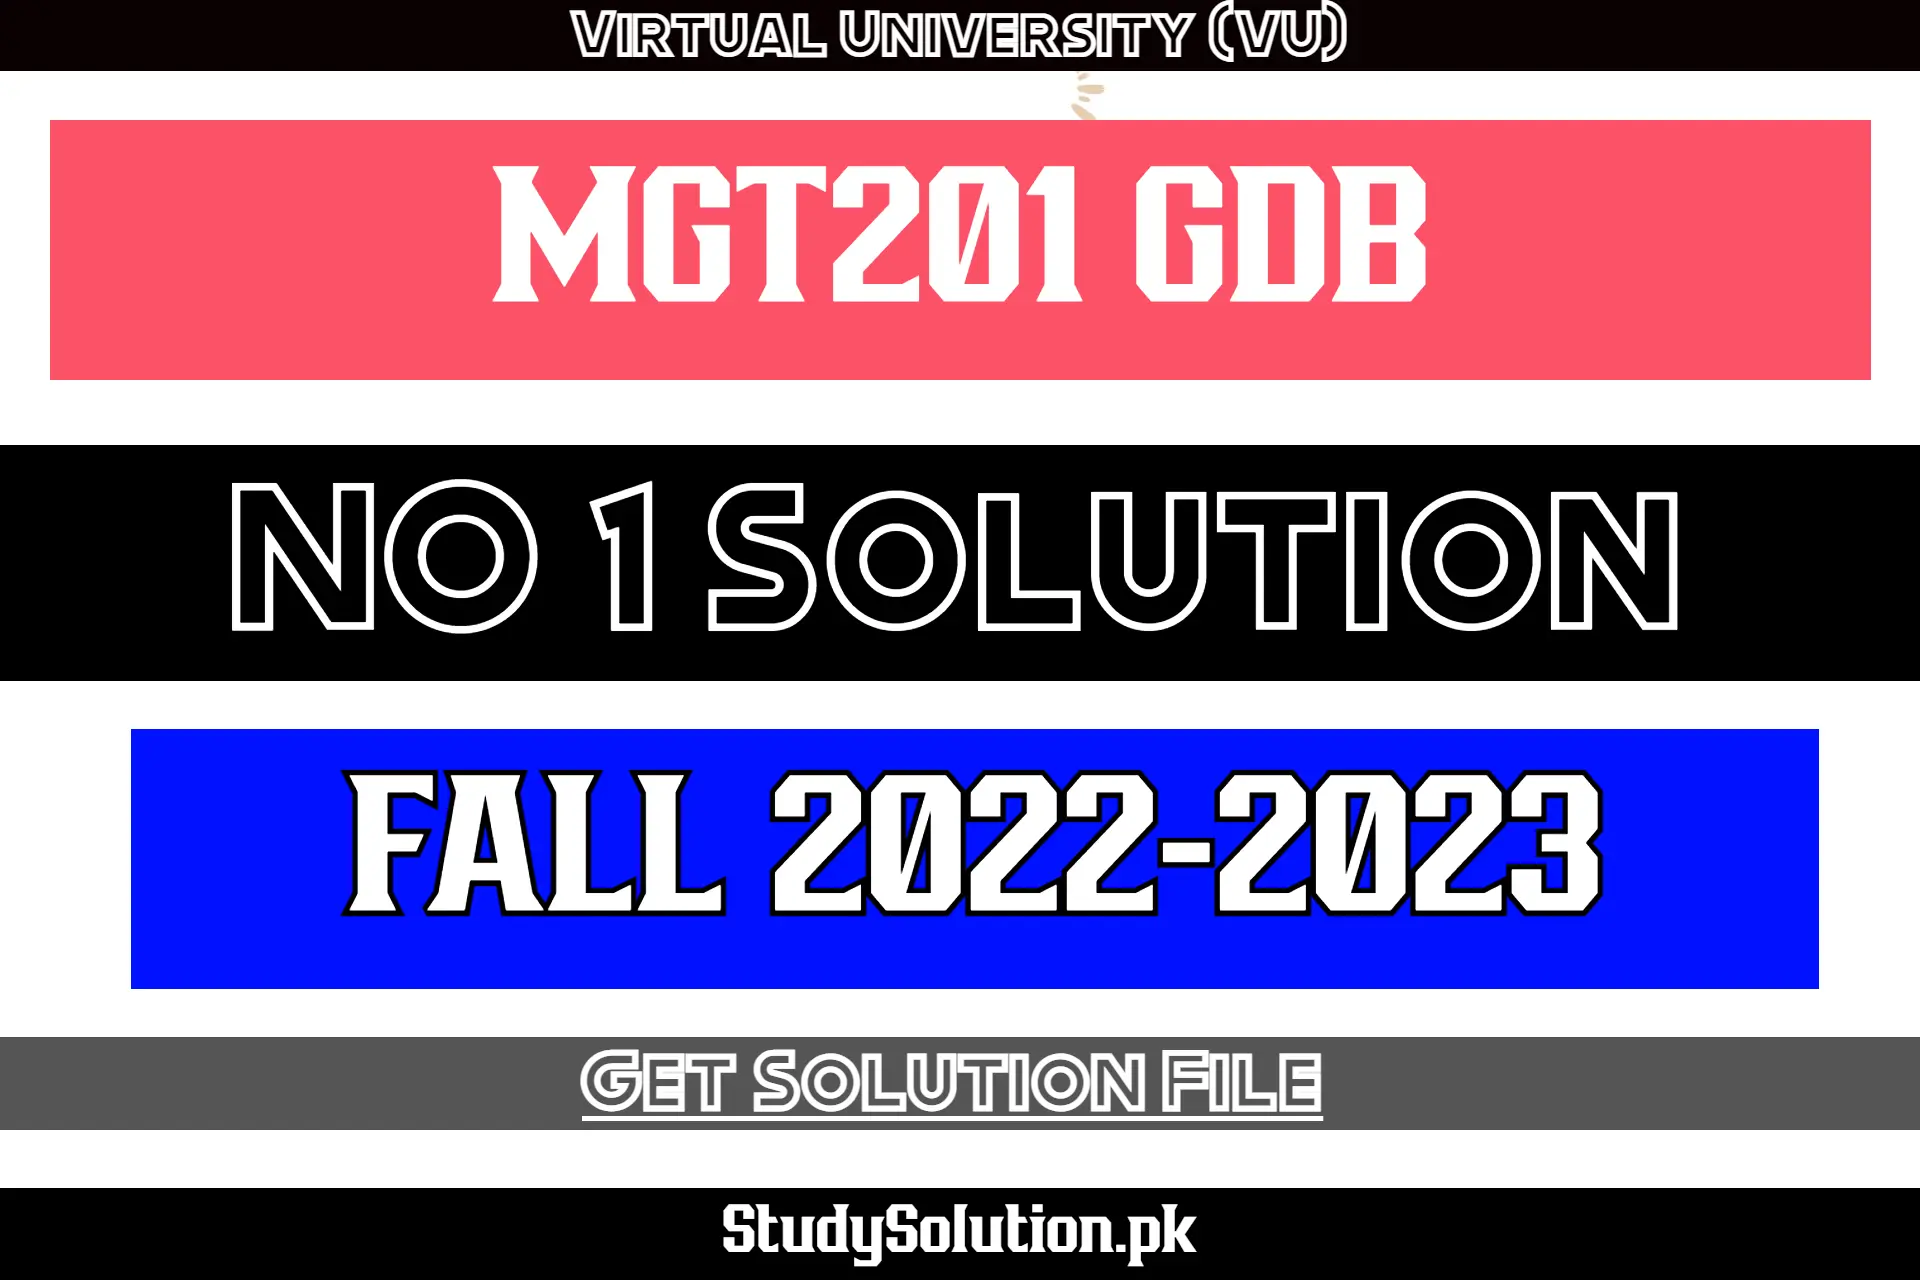 MGT201 GDB No 1 Solution Fall 2022